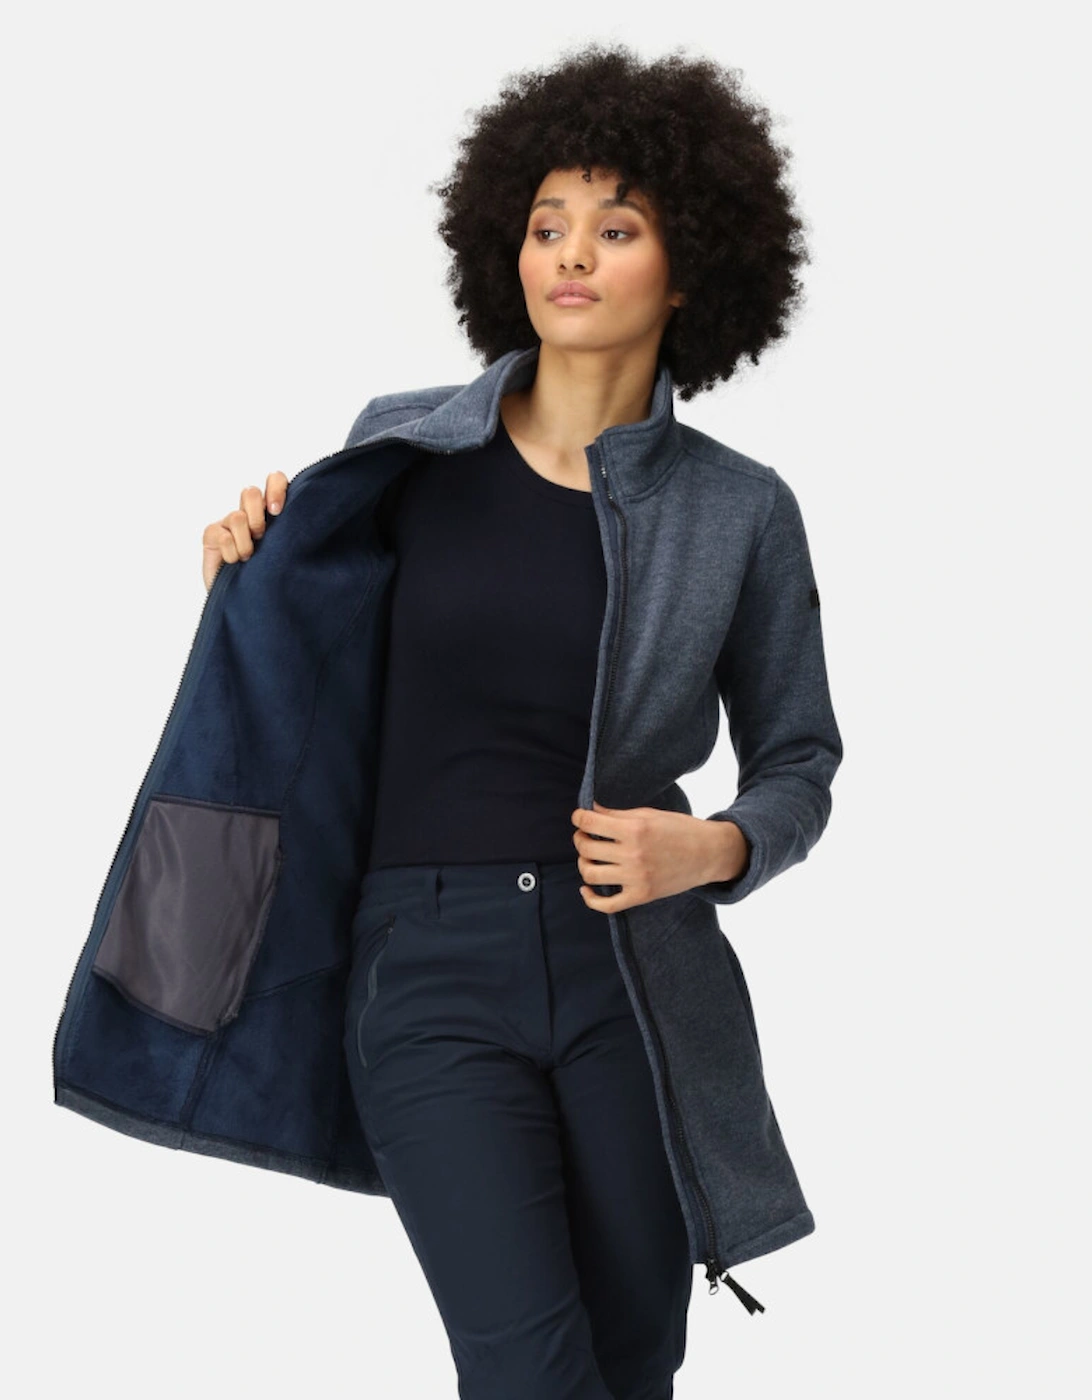 Womens Anderby Full Zip Longline Fleece Jacket